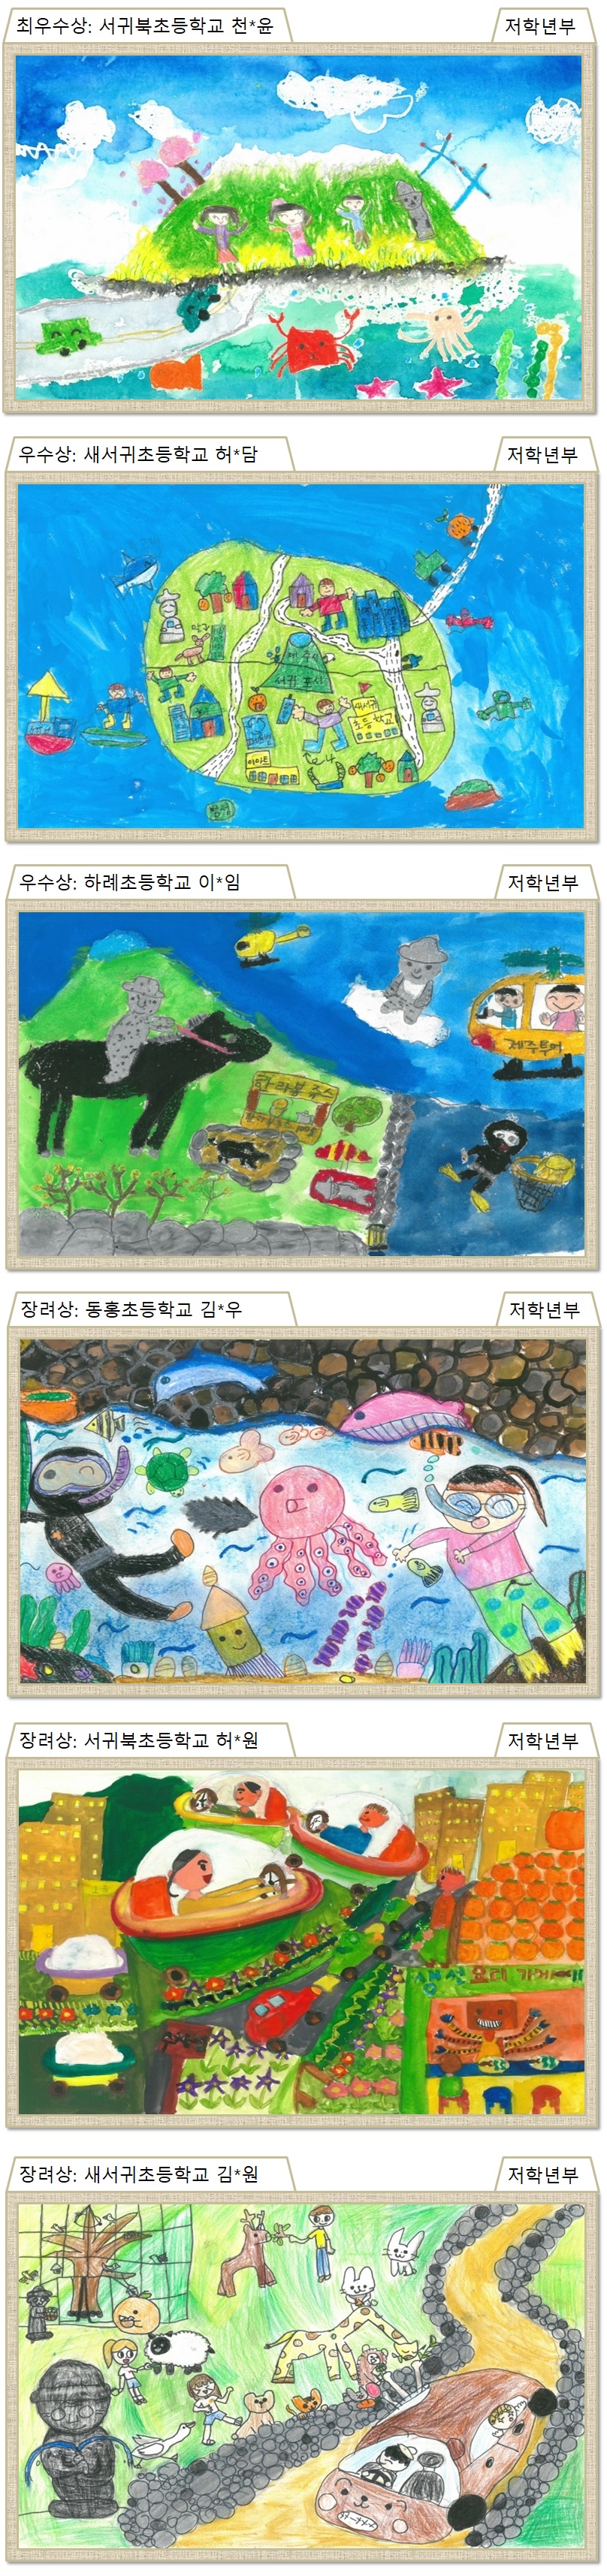 제6회 국토교통인재개발원 어린이 그림 공모 수상작품(저학년)